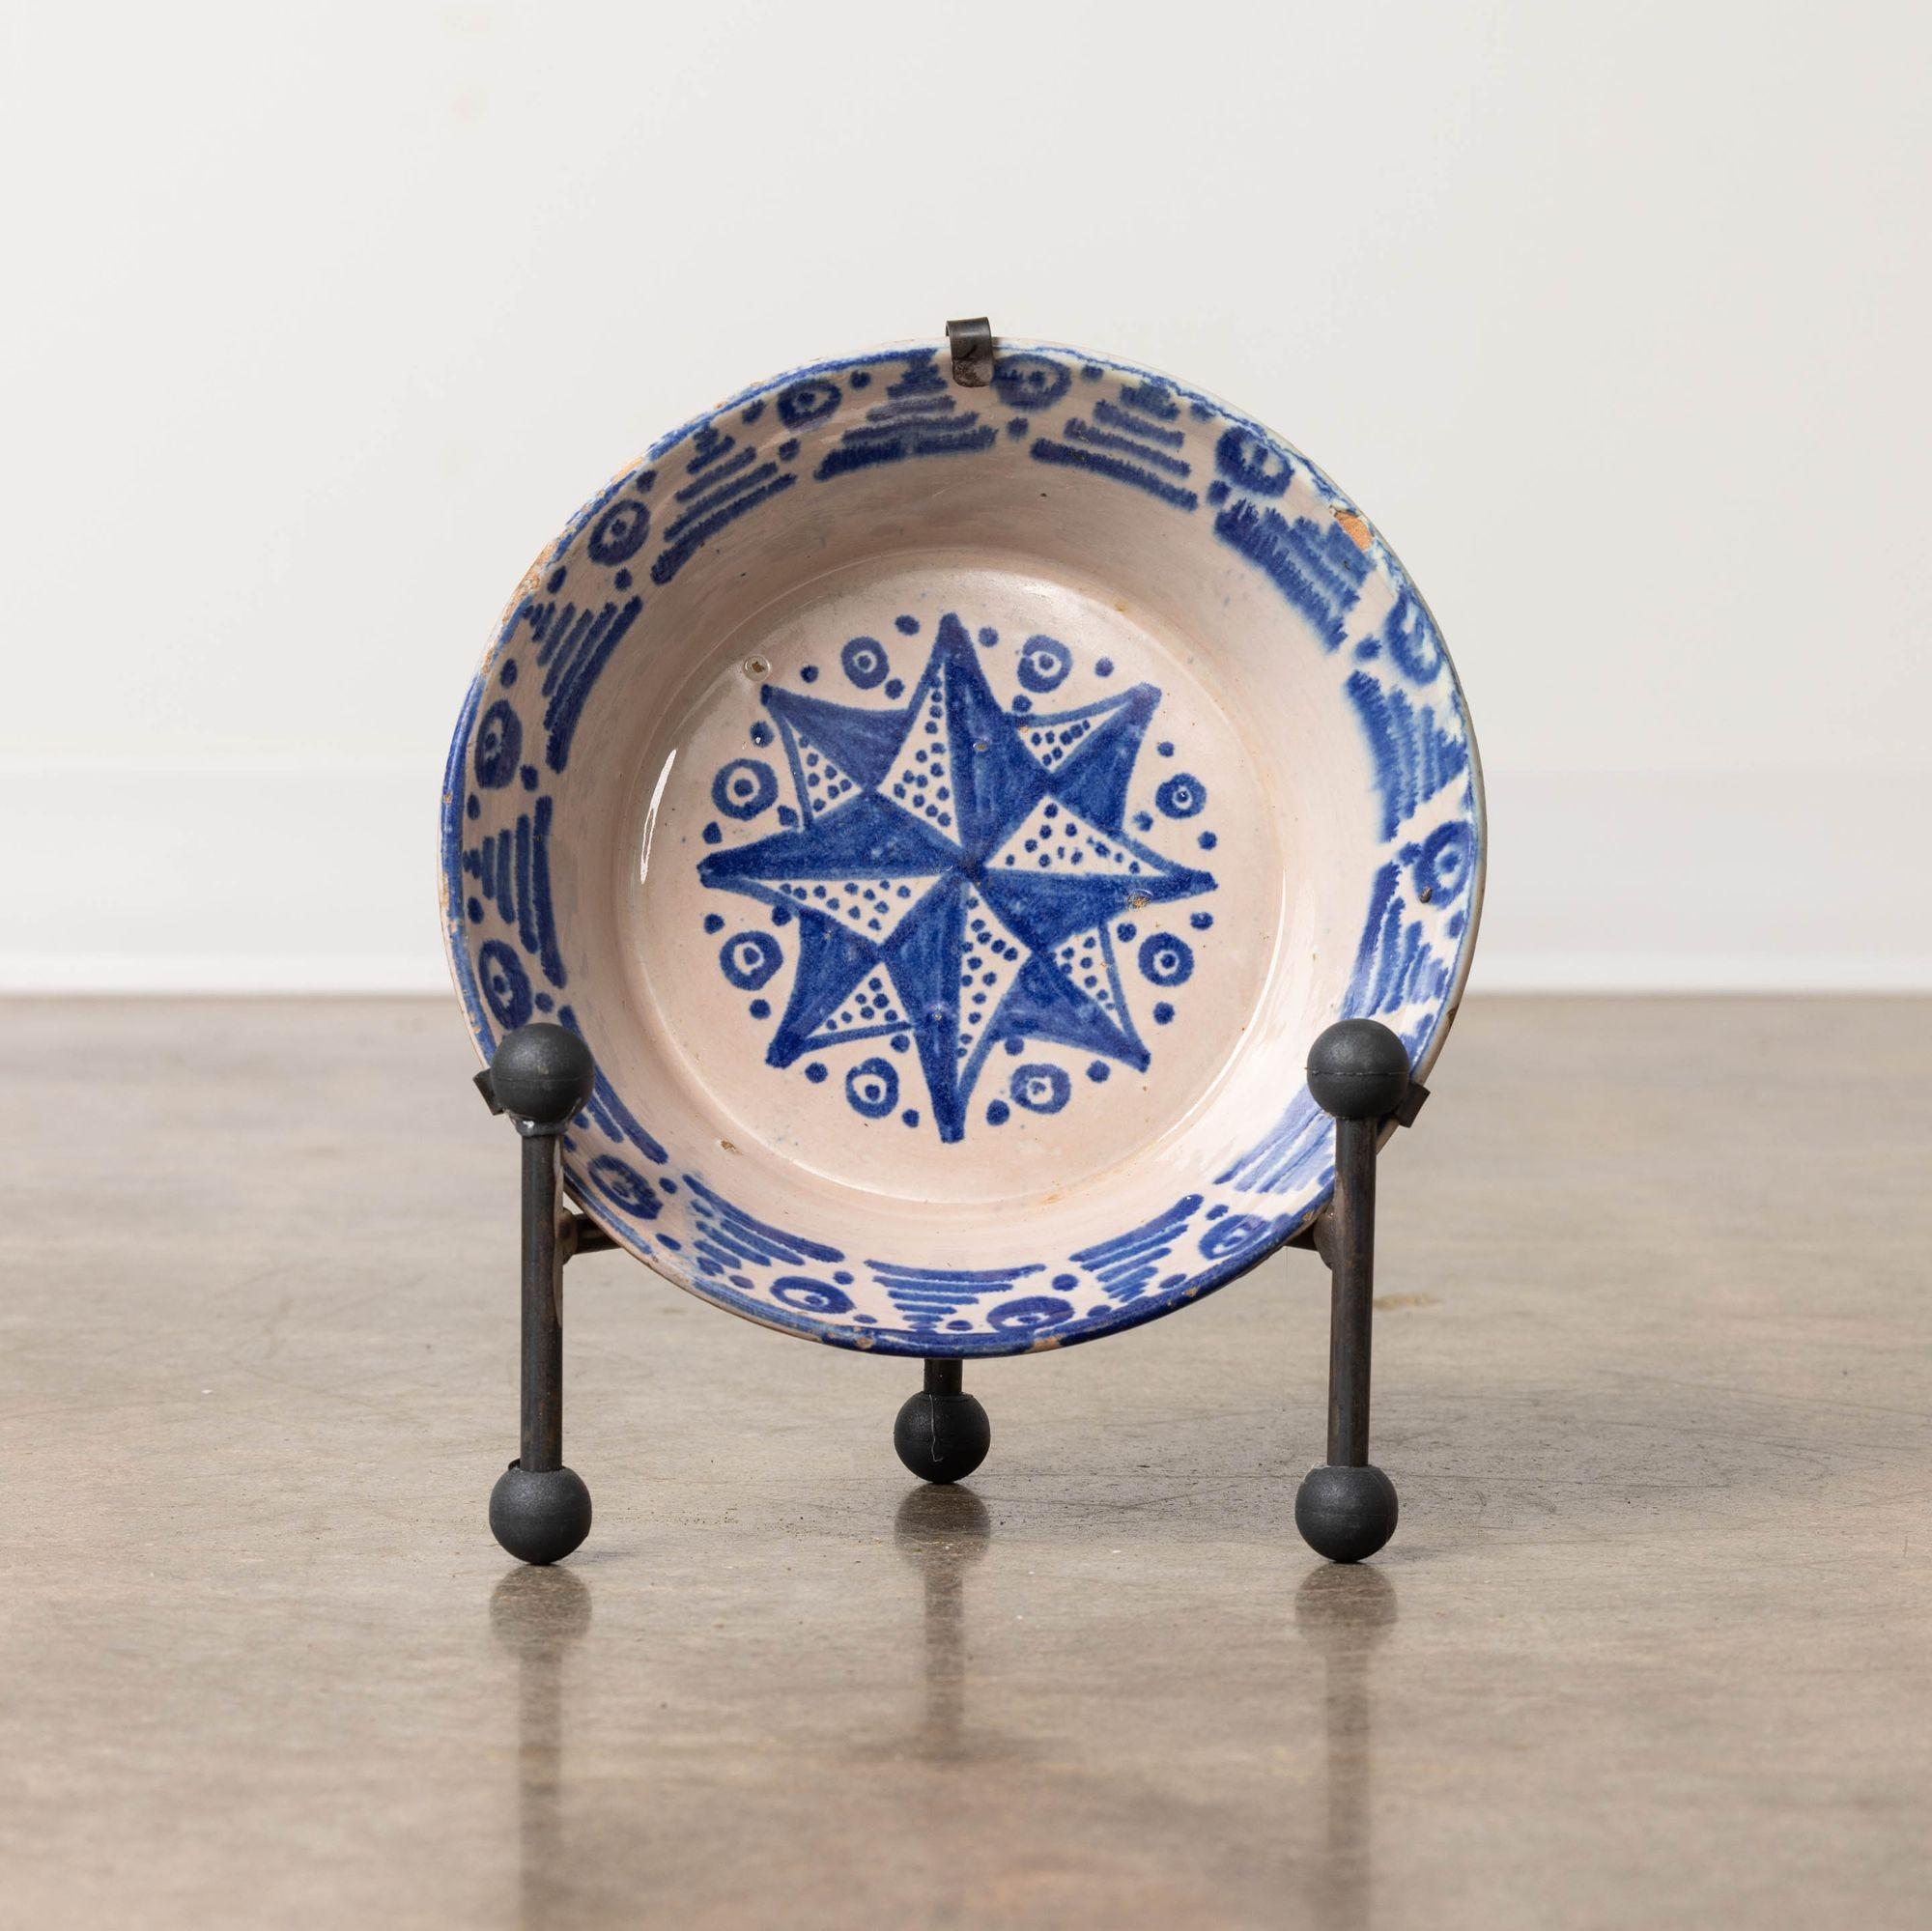 Schale aus Steingut aus Granada, Spanien, 19. Jh., blau bemalt, milchweiße Glasur. Diese tiefe Schale zeichnet sich durch ein handgemaltes Sternmotiv auf dem Schalenboden und dekorative Seiten aus. Verkauft mit einem handgeschmiedeten Eisenständer